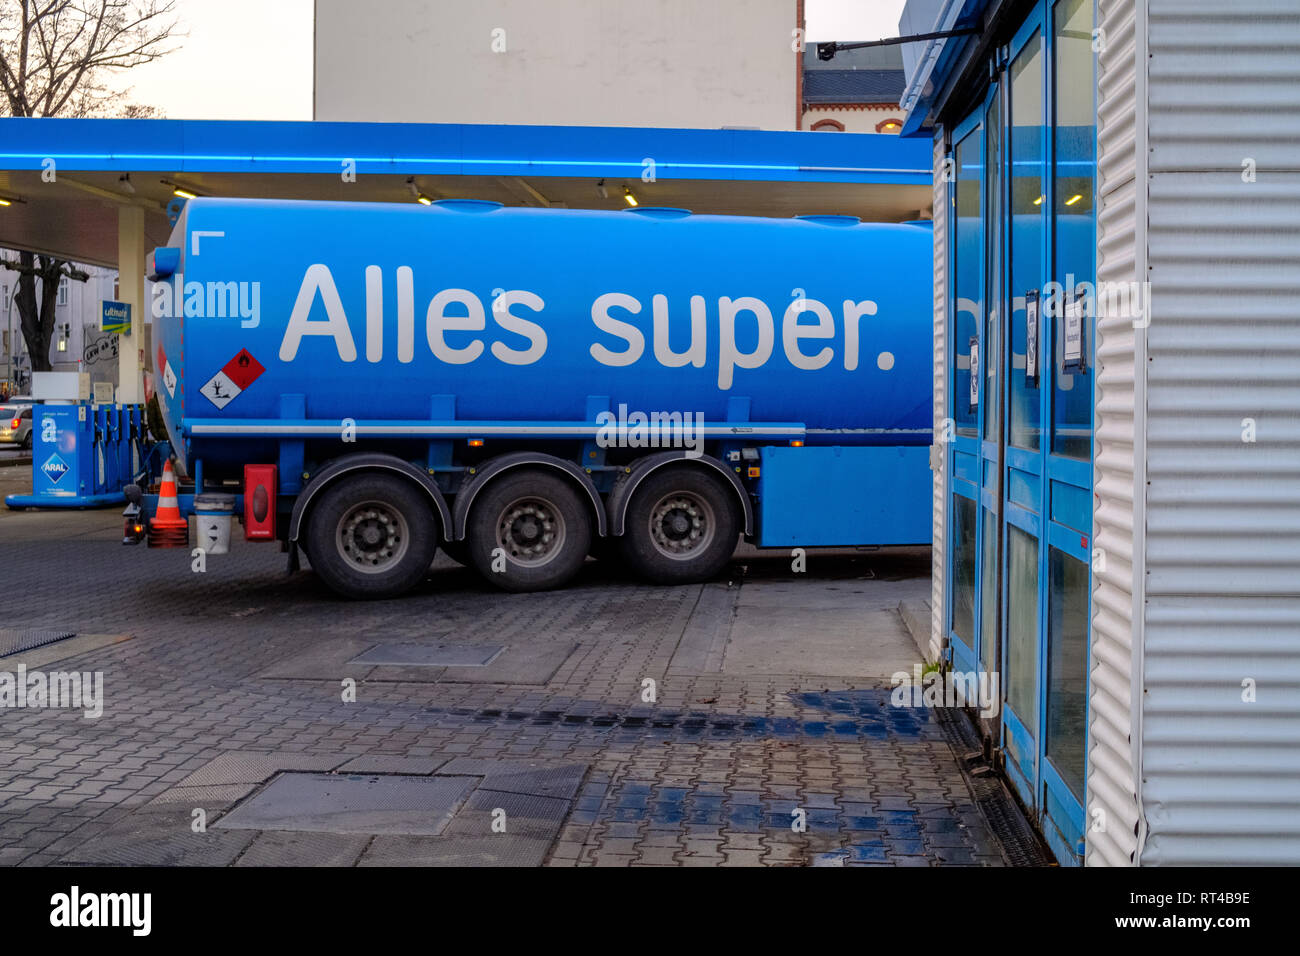 Marke Tankwagen an einer Aral Tankstelle in Berlin, Deutschland, zeigt Deutschen Slogan der Marke "Alles super.". Stockfoto